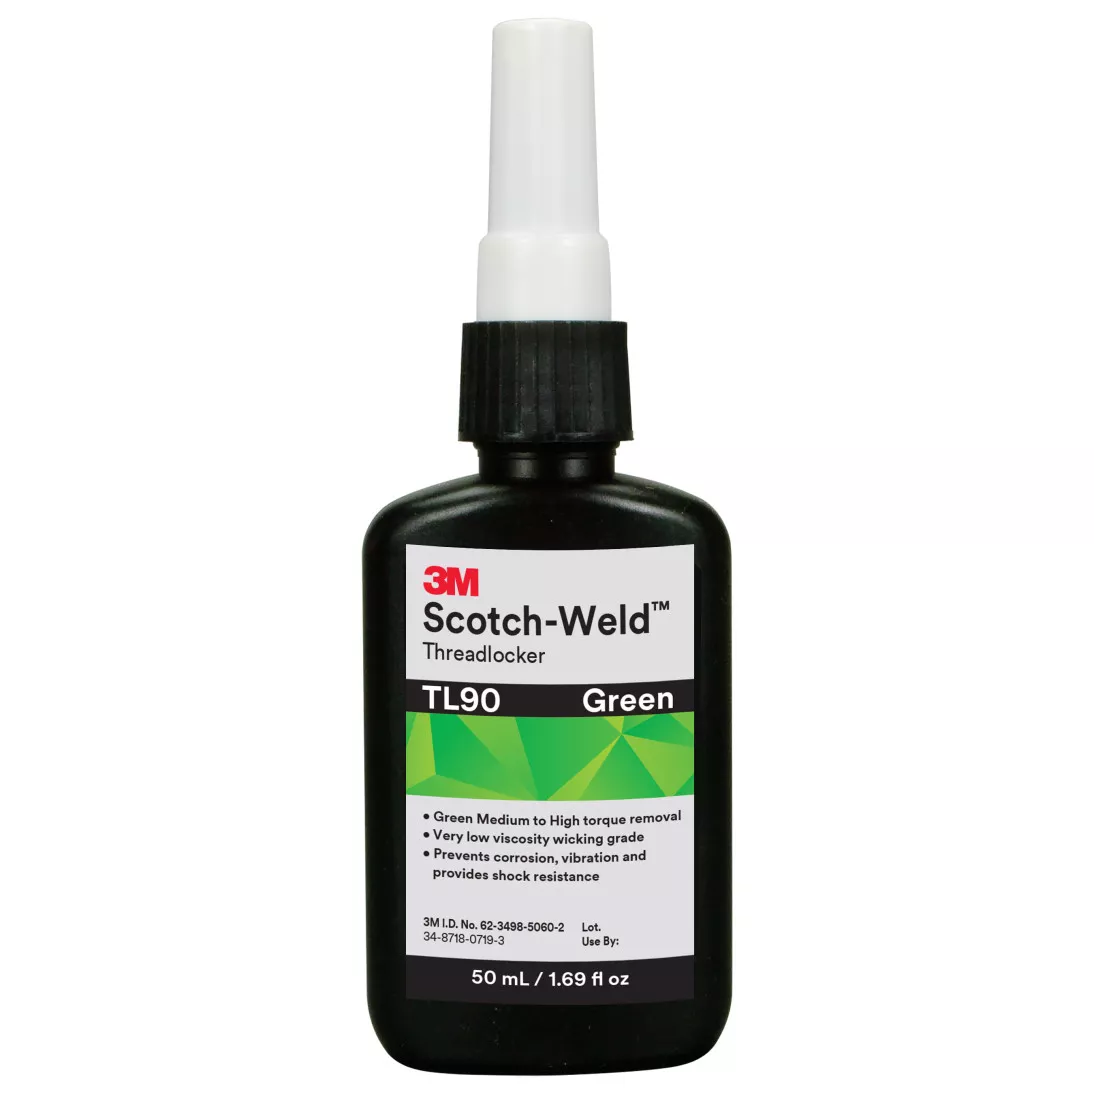 3M™ Scotch-Weld™ Threadlocker TL90, Green, 50 mL Bottle, 10/case